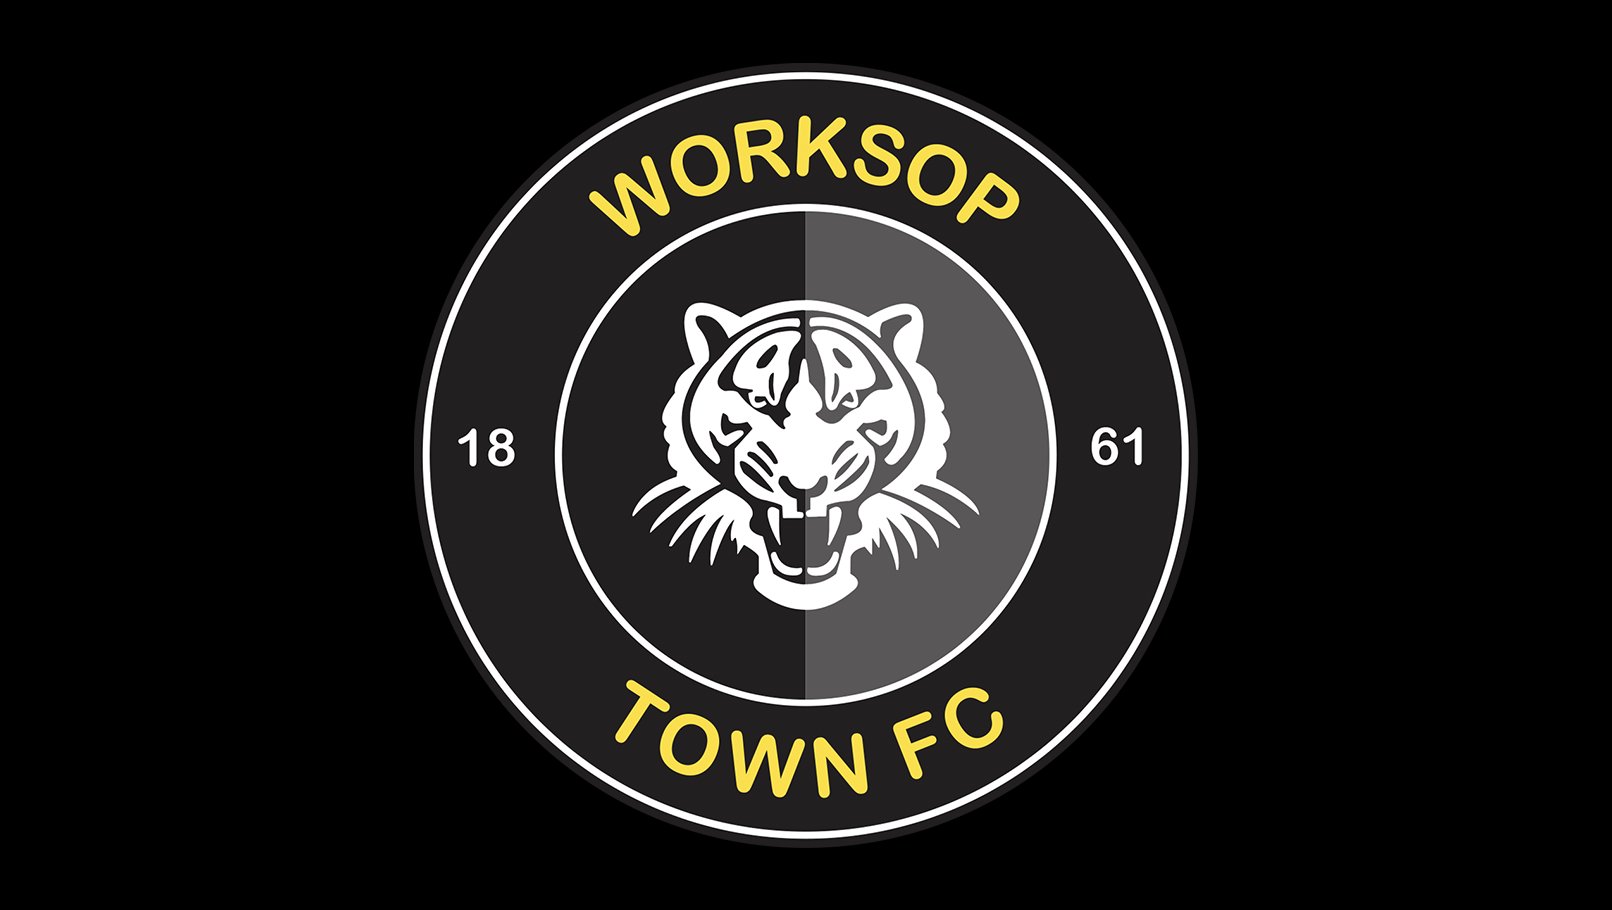 Worksop Town FC trên Twitter: "Tuyên bố của Câu lạc bộ - Thay đổi quản lý https://t.co/wlIbsR48Pp https://t.co/31I4hvoMXQ" / Tiếng riu ríu